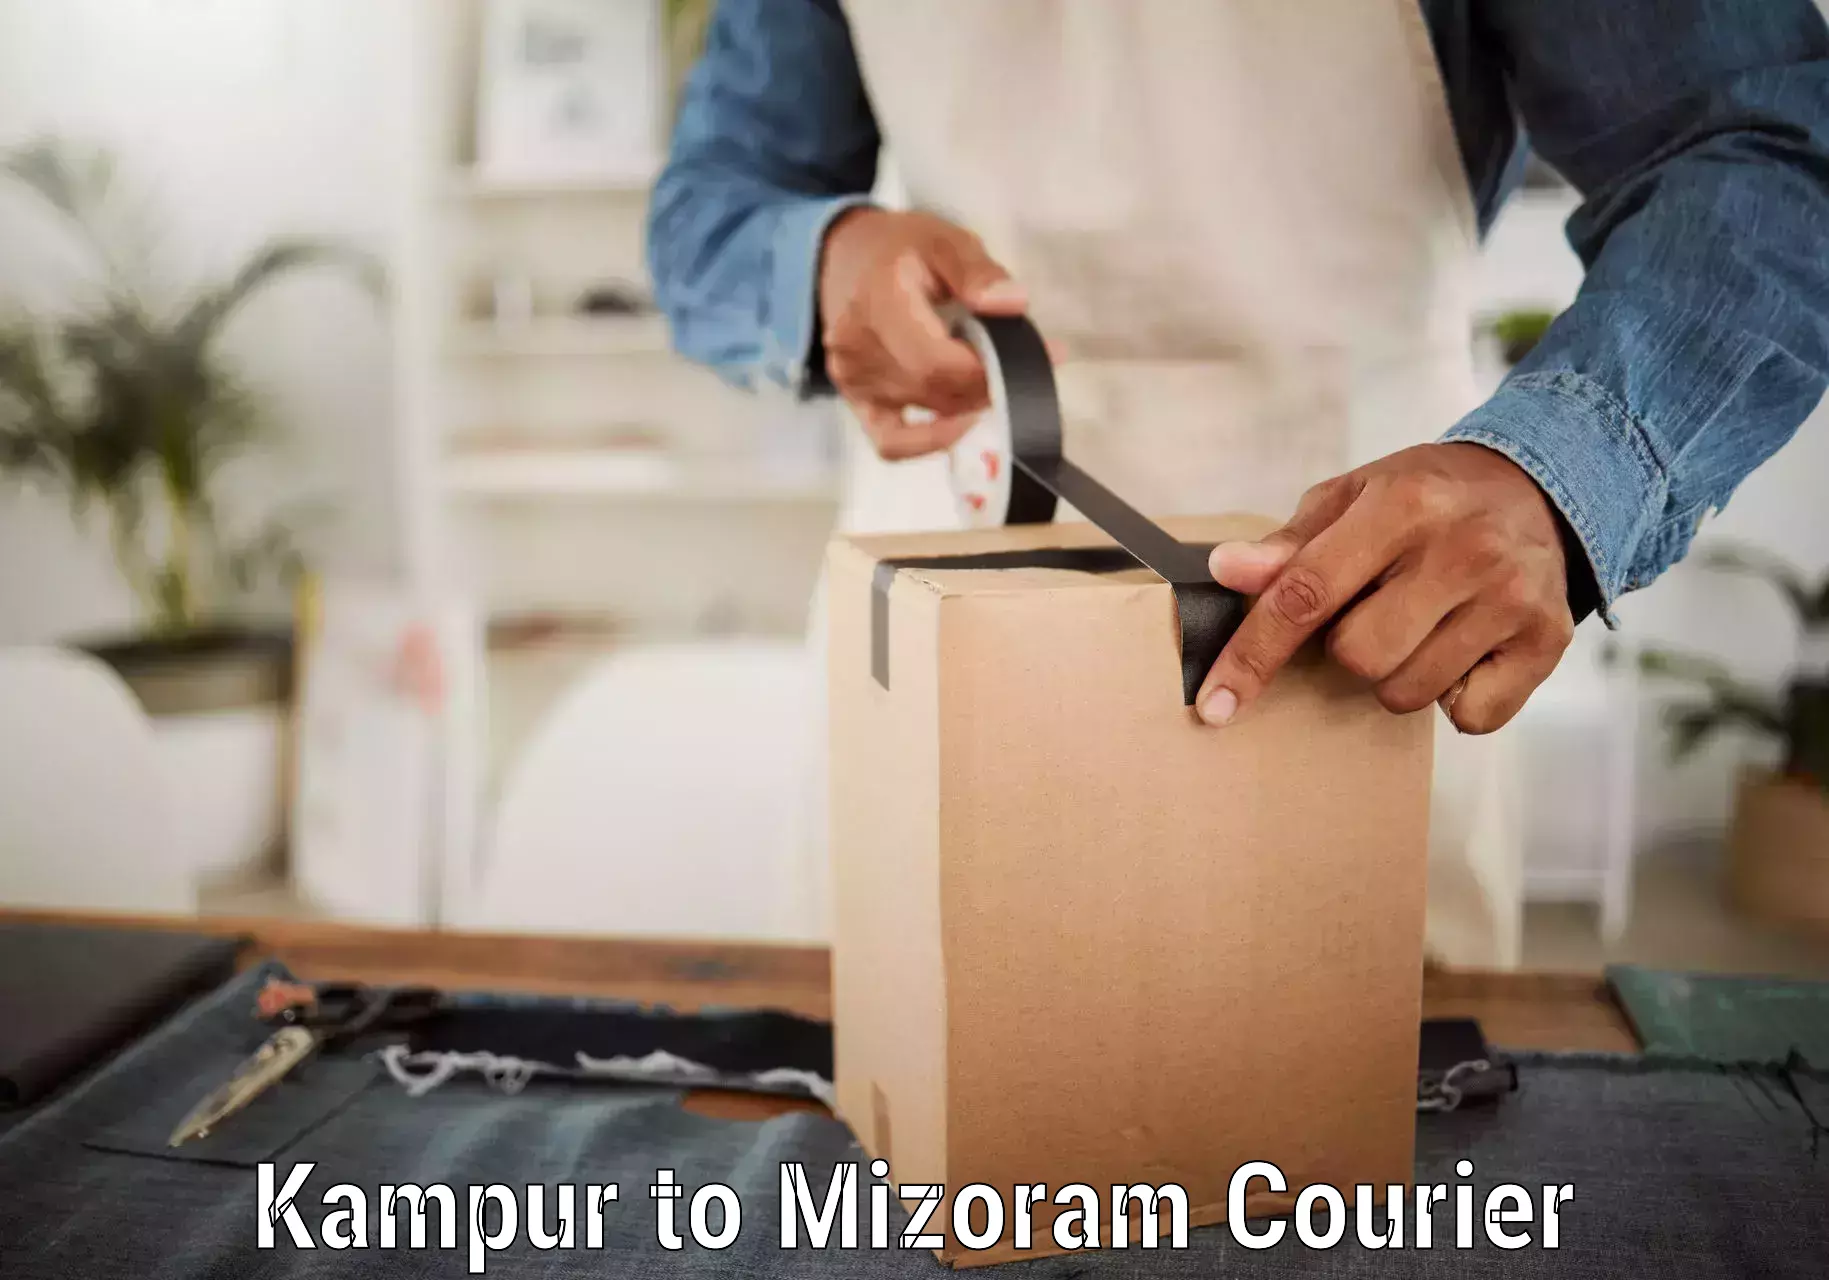 Courier service comparison Kampur to Saitual